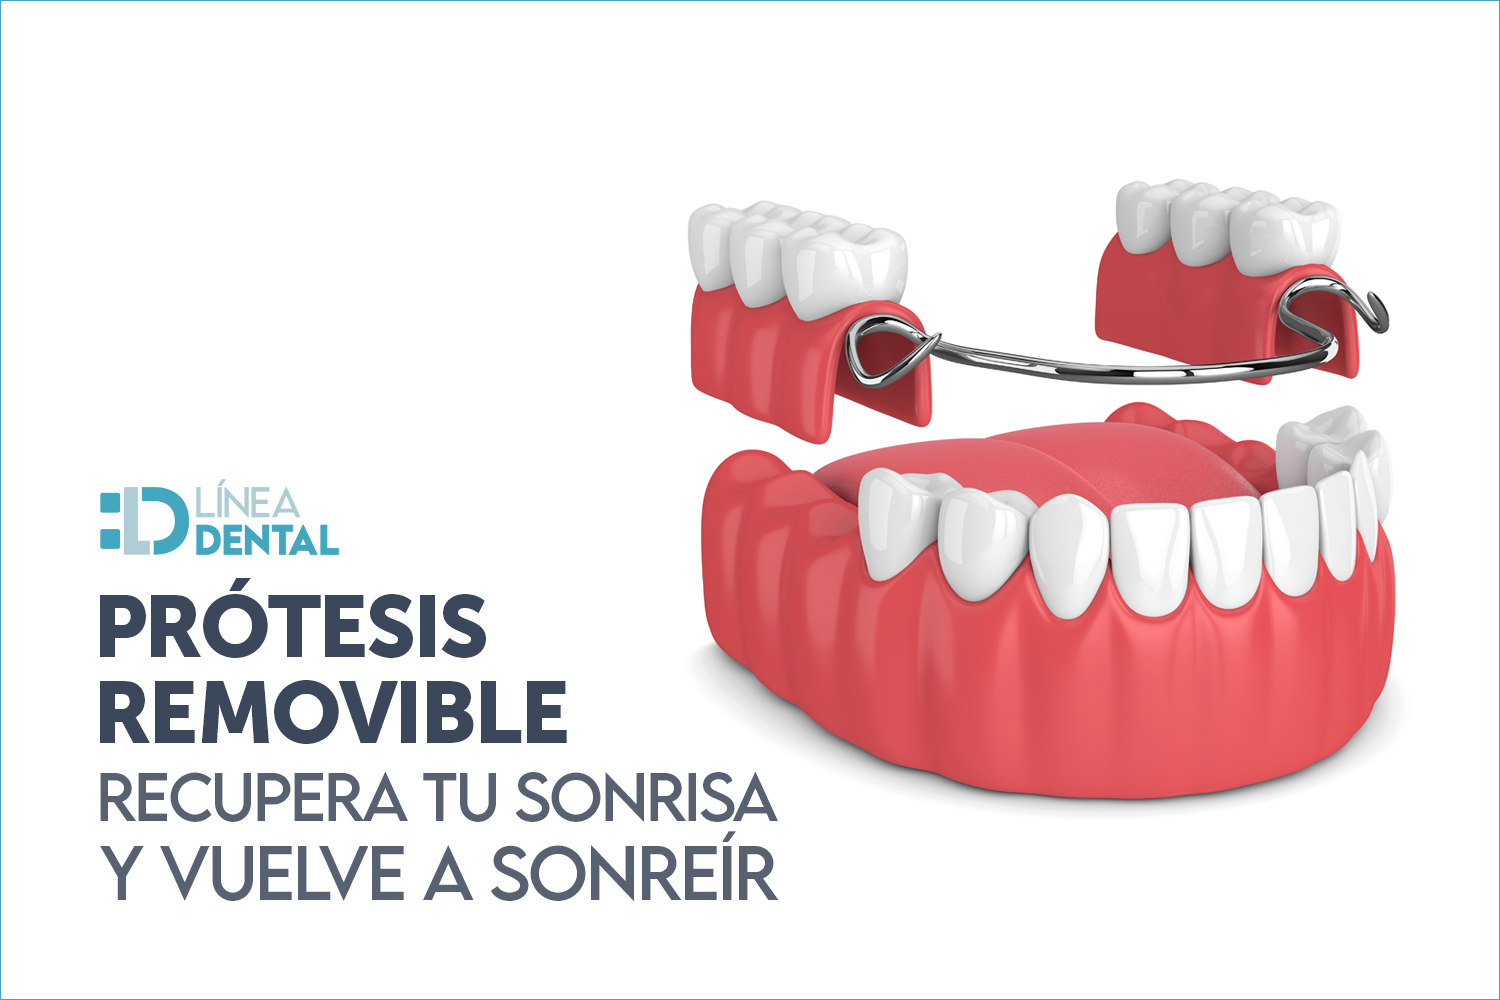 01-protesis-dentales-removible-recupera-tu-sonrisa-vuelva-sonreir-linea-dental-ciudad-real-miguelturra